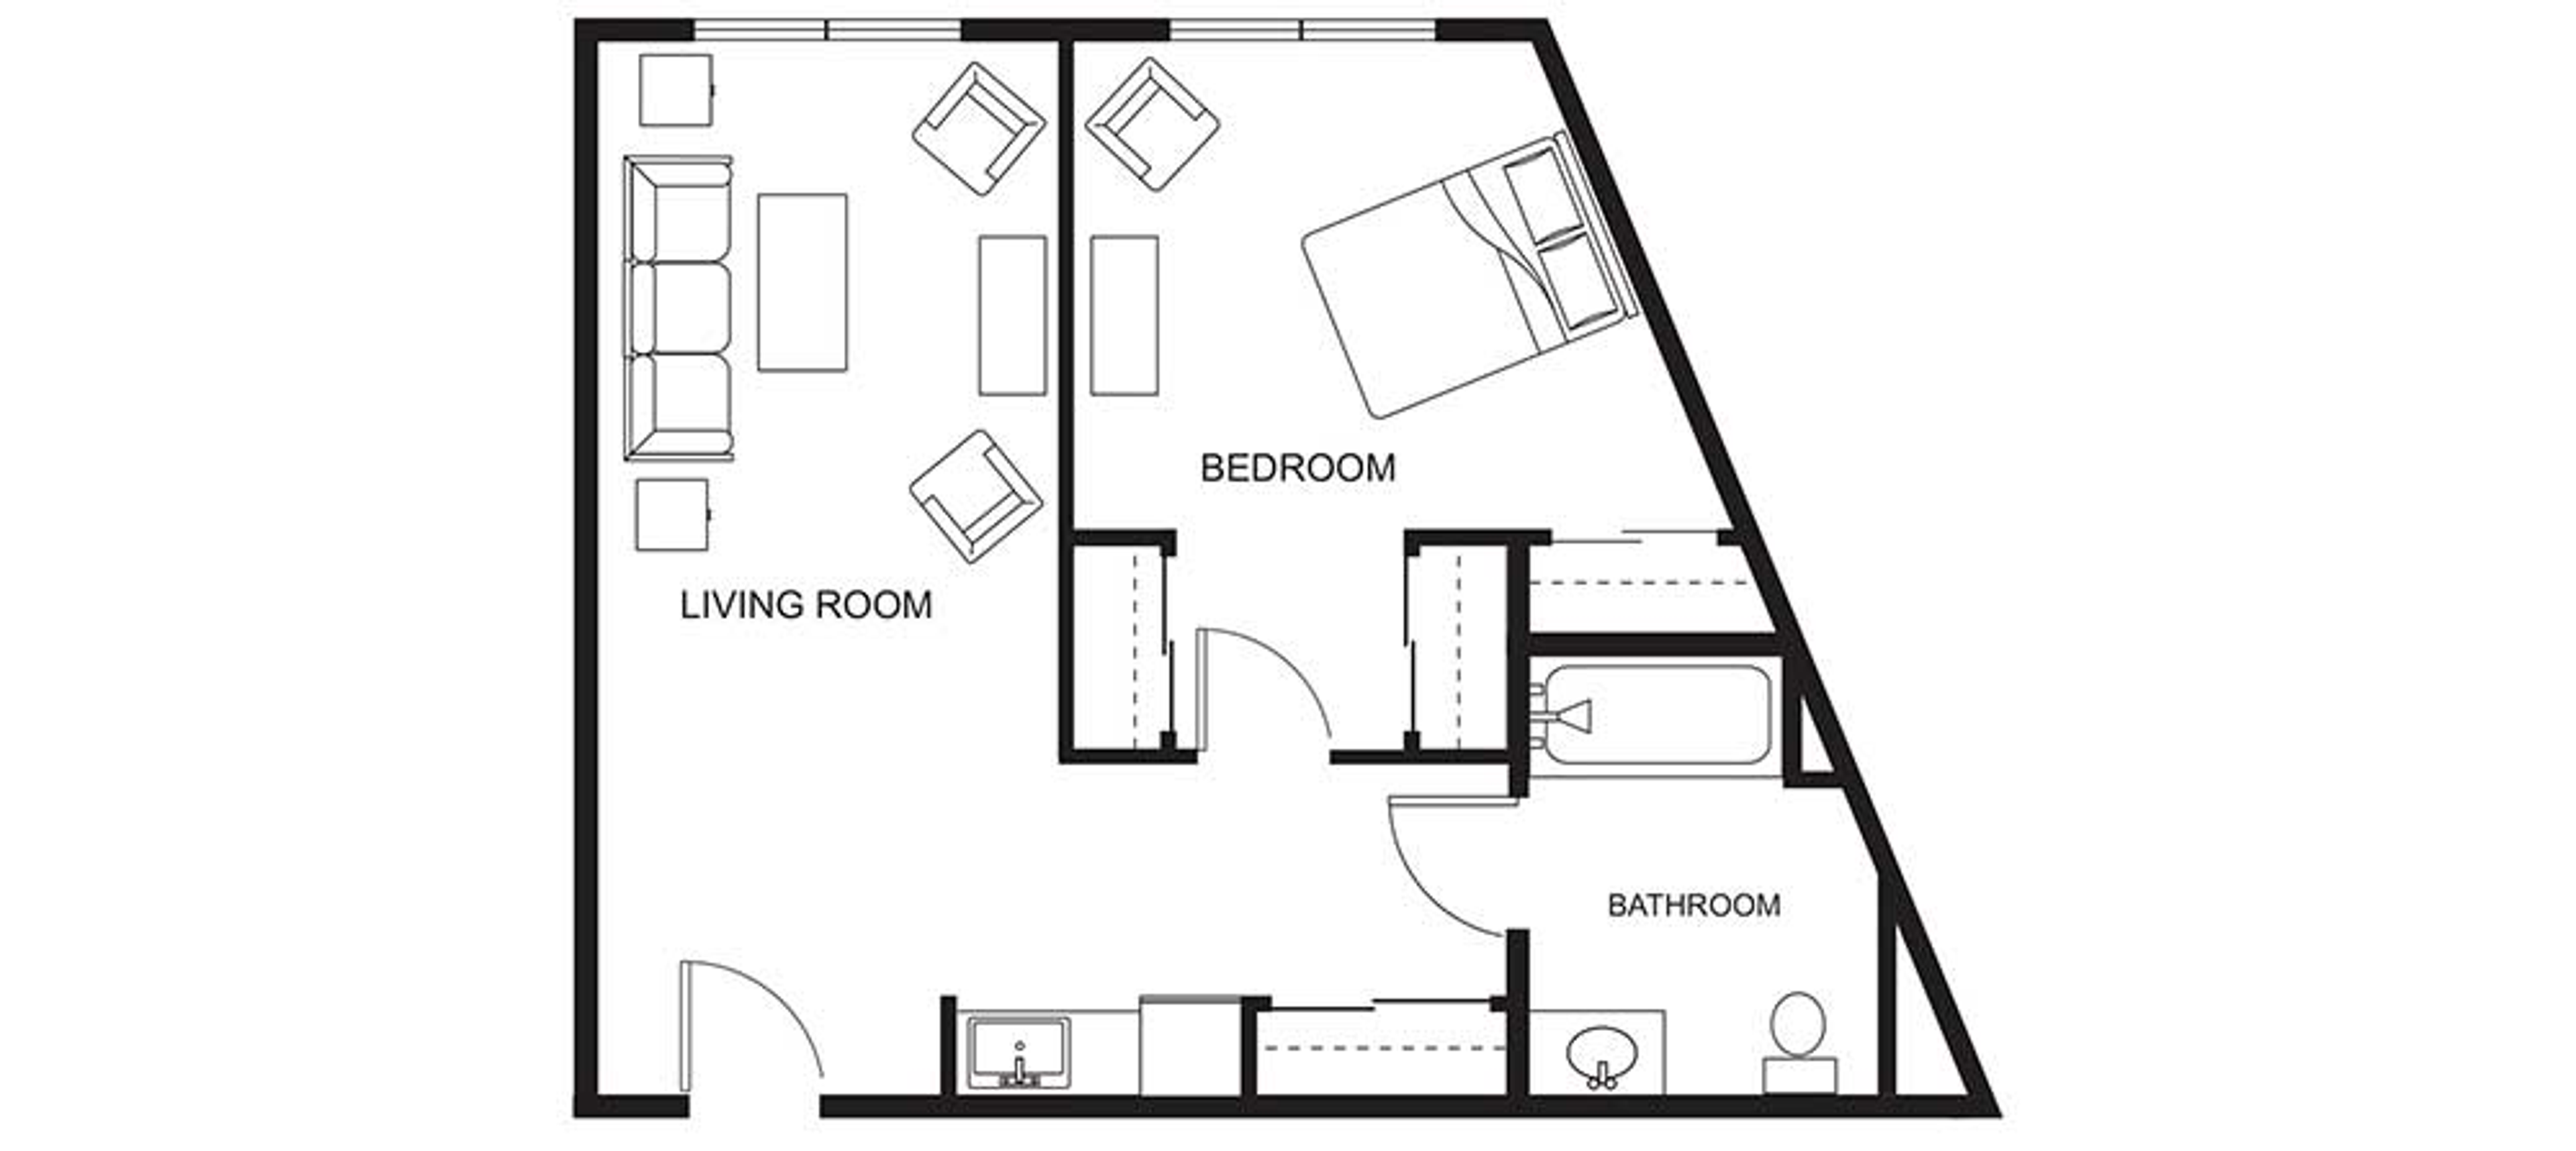 Floorplan - Clearwater Springs - 1B 1B 662 sqft Assisted Living 